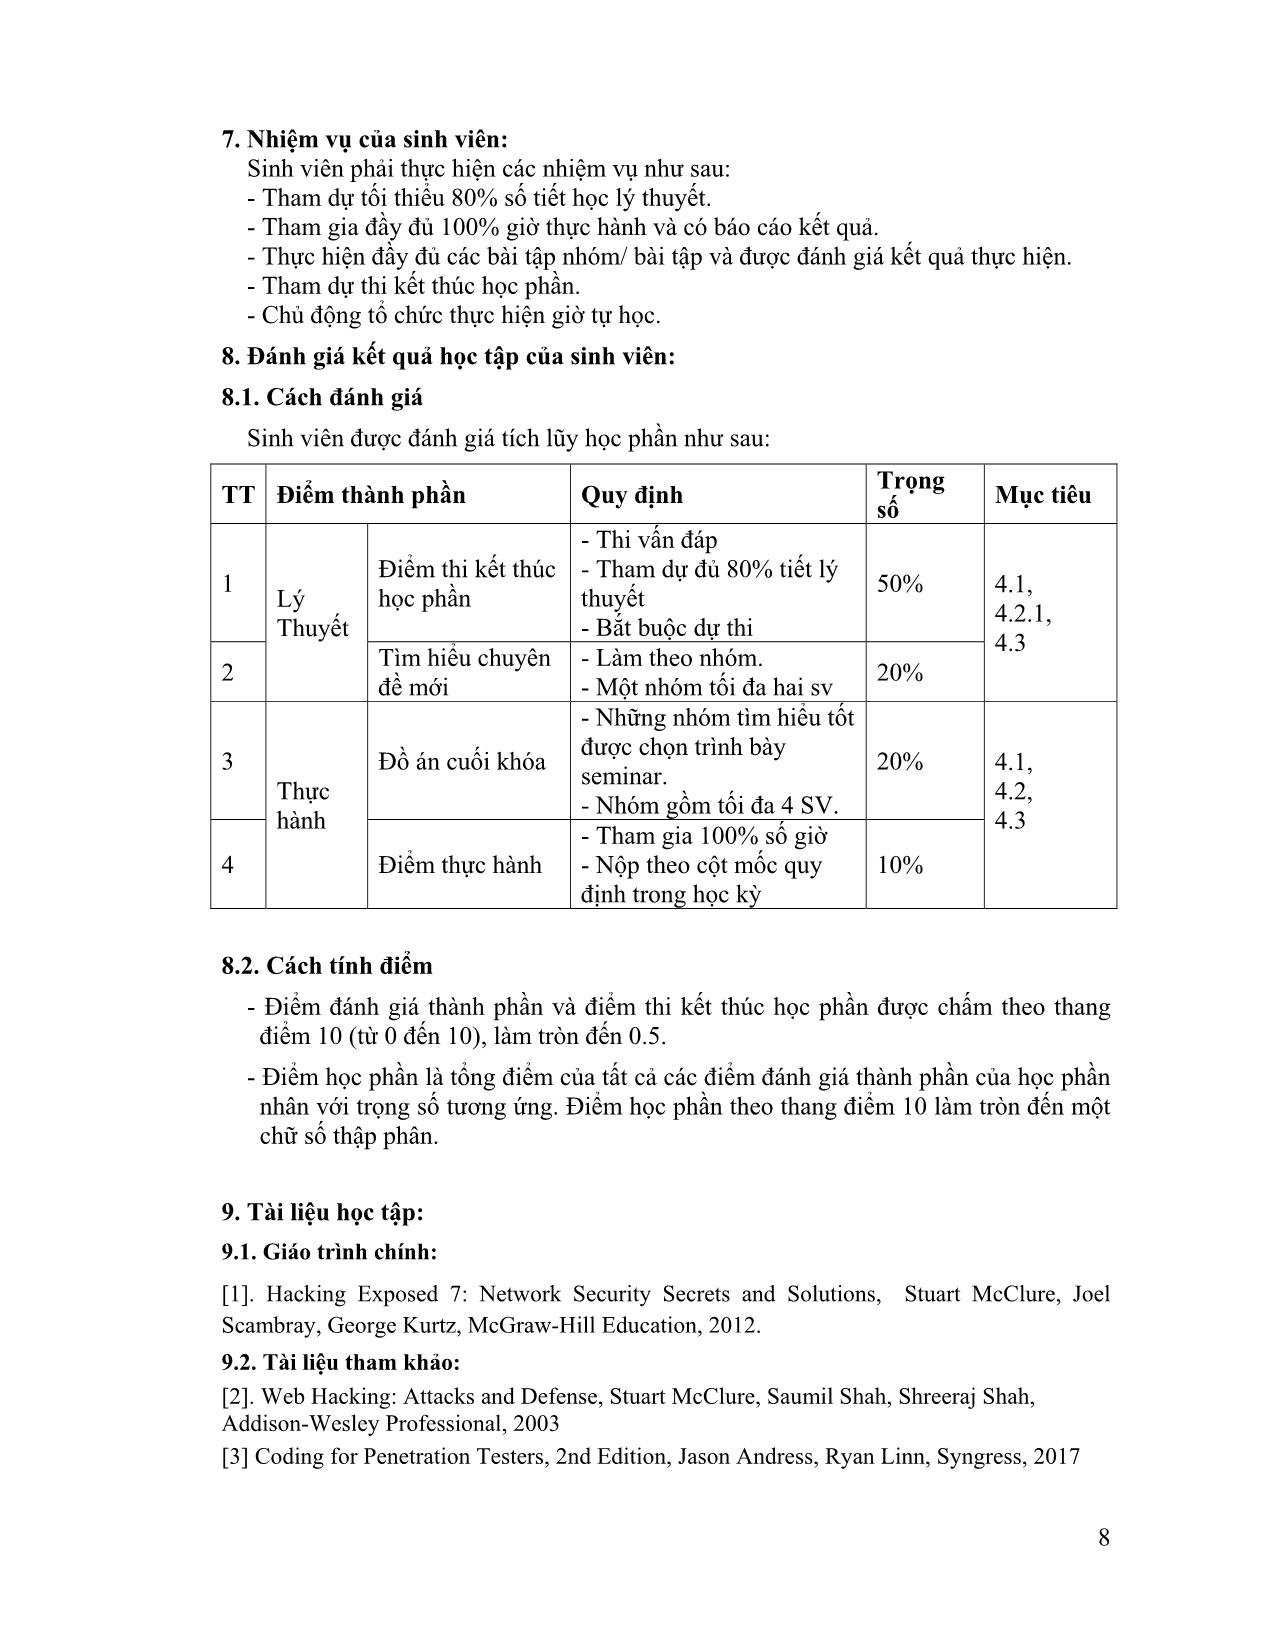 Đề cương chi tiết học phần Kiểm thử (Penetration Testing) trang 8